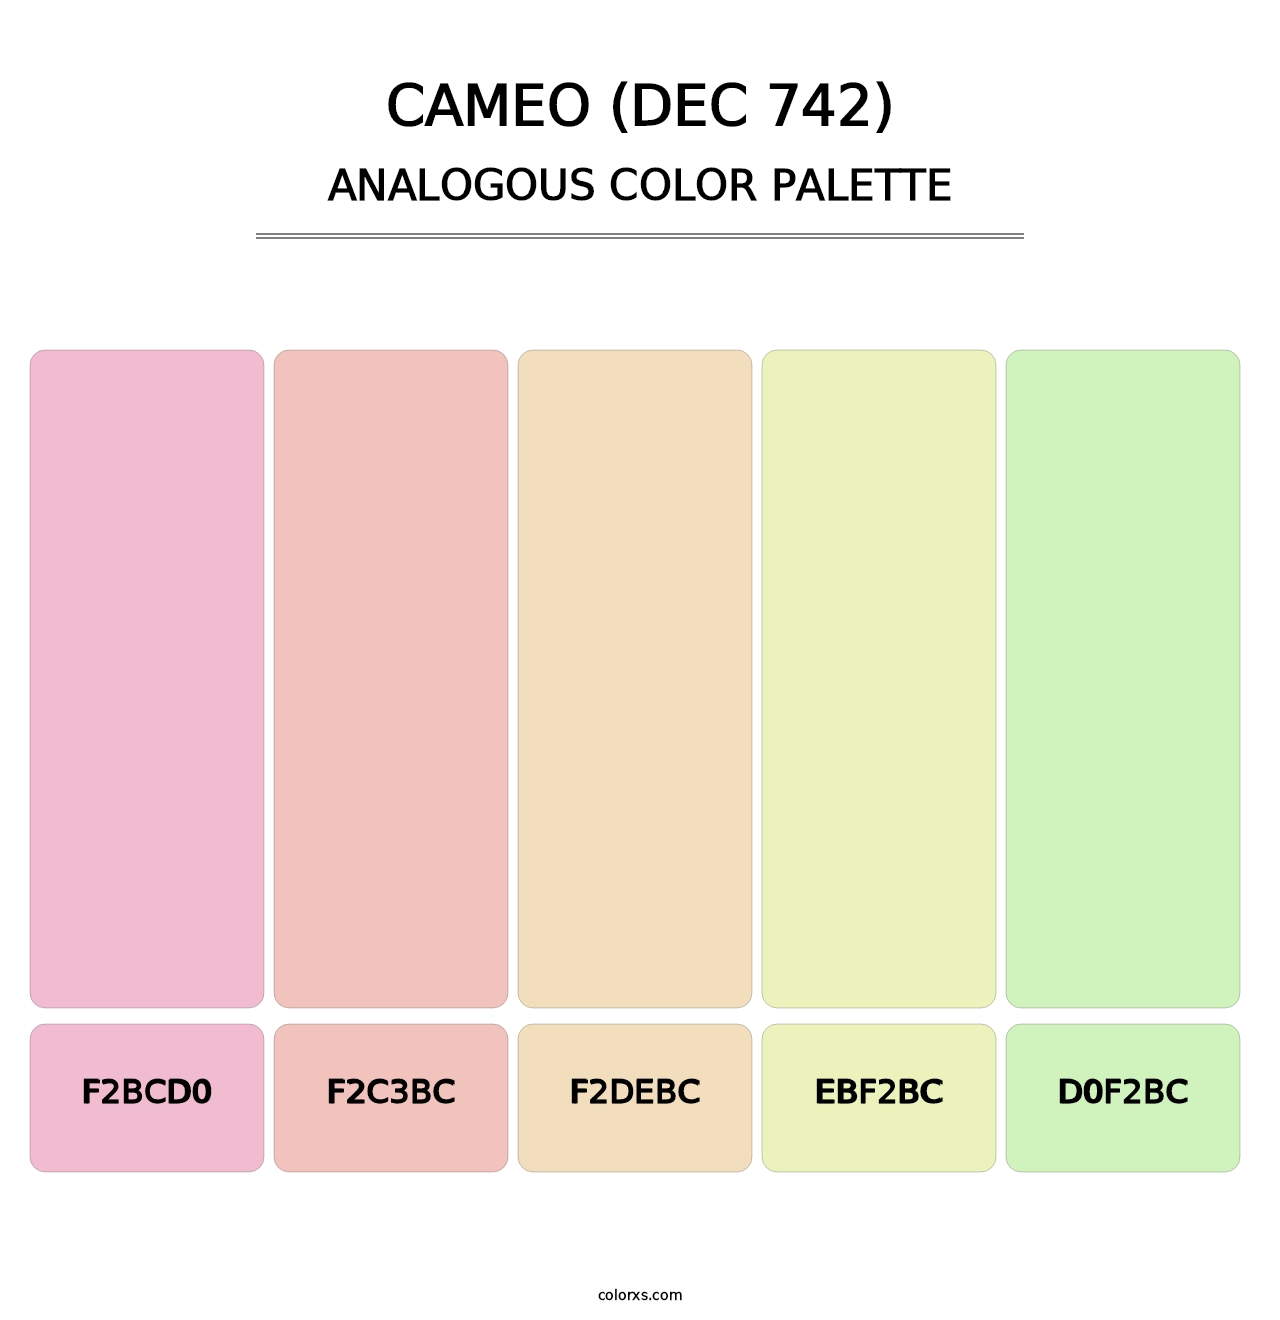 Cameo (DEC 742) - Analogous Color Palette